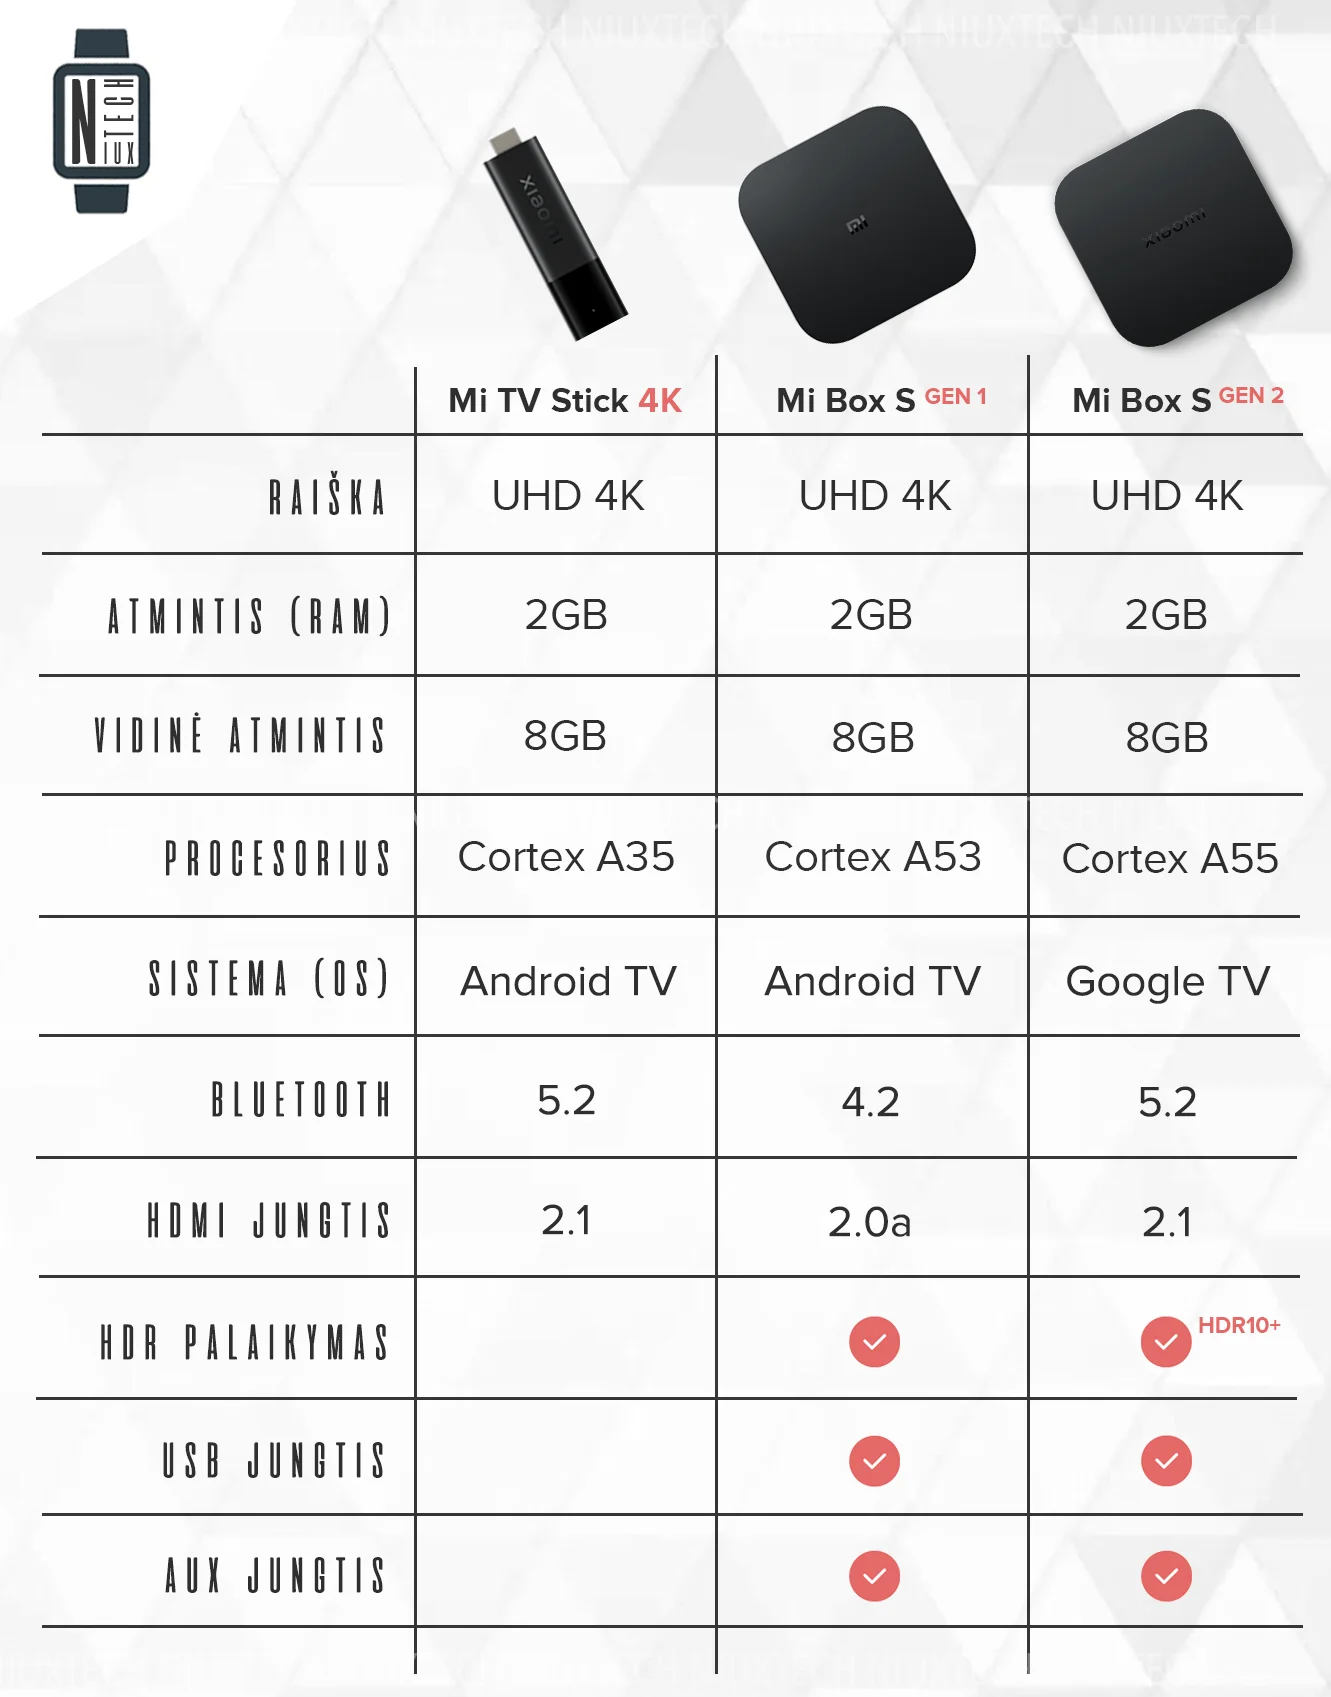 Xiaomi Mi Box S (2nd Gen) vs Mi Box S: Specs and feature comparison -  Dignited